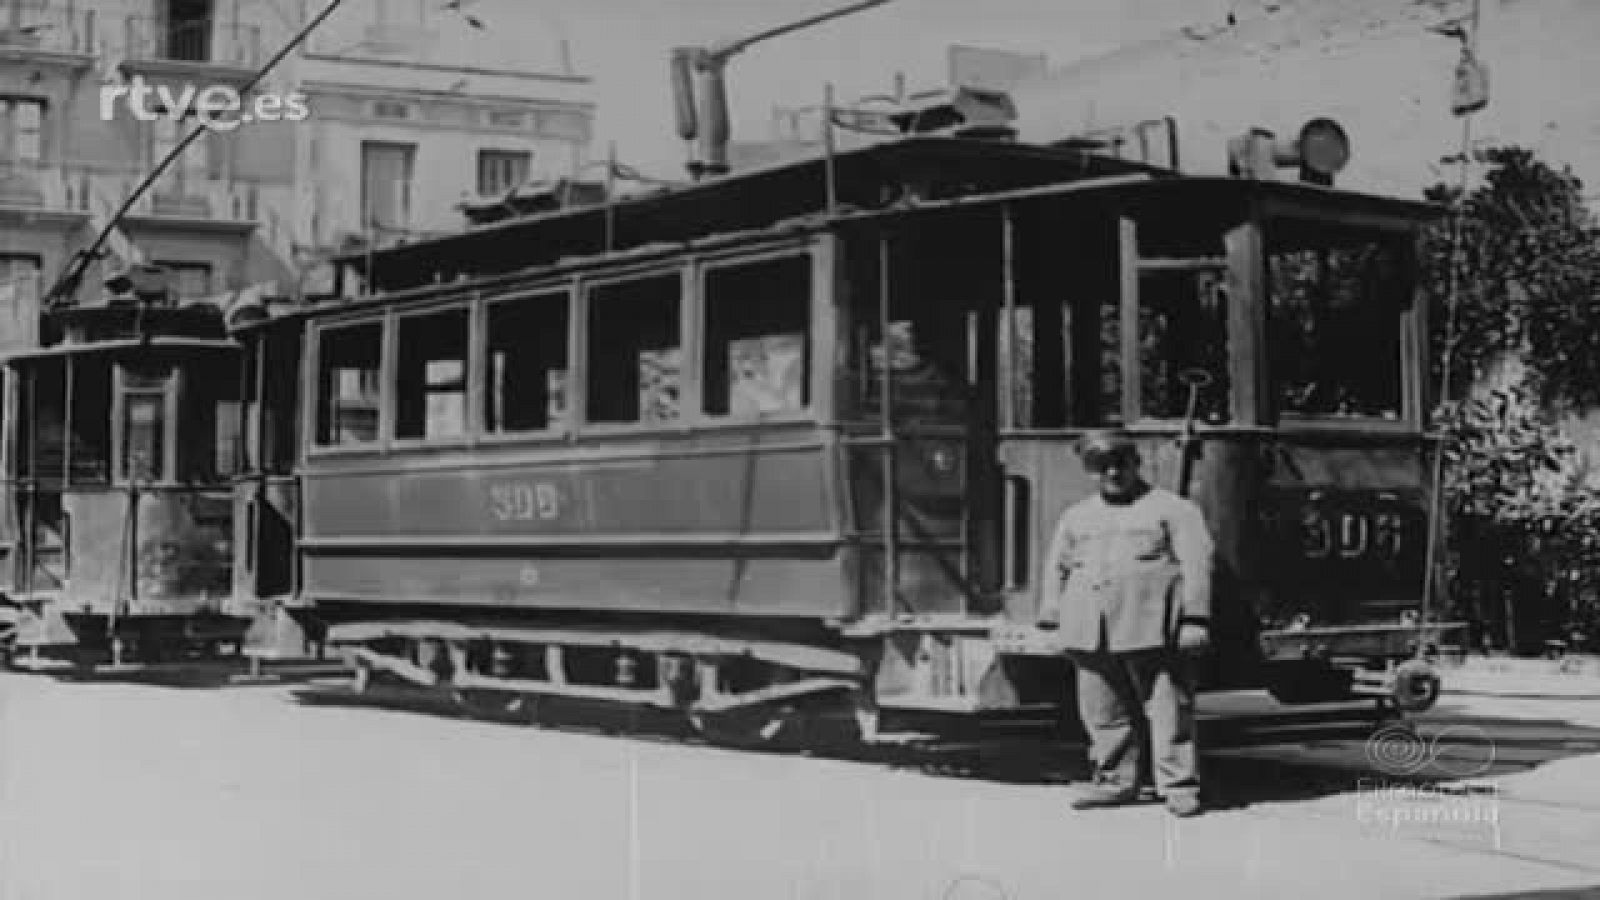 Arxiu TVE - NODO - Darrer viatge del tramvia 23 per Barcelona, el 1965